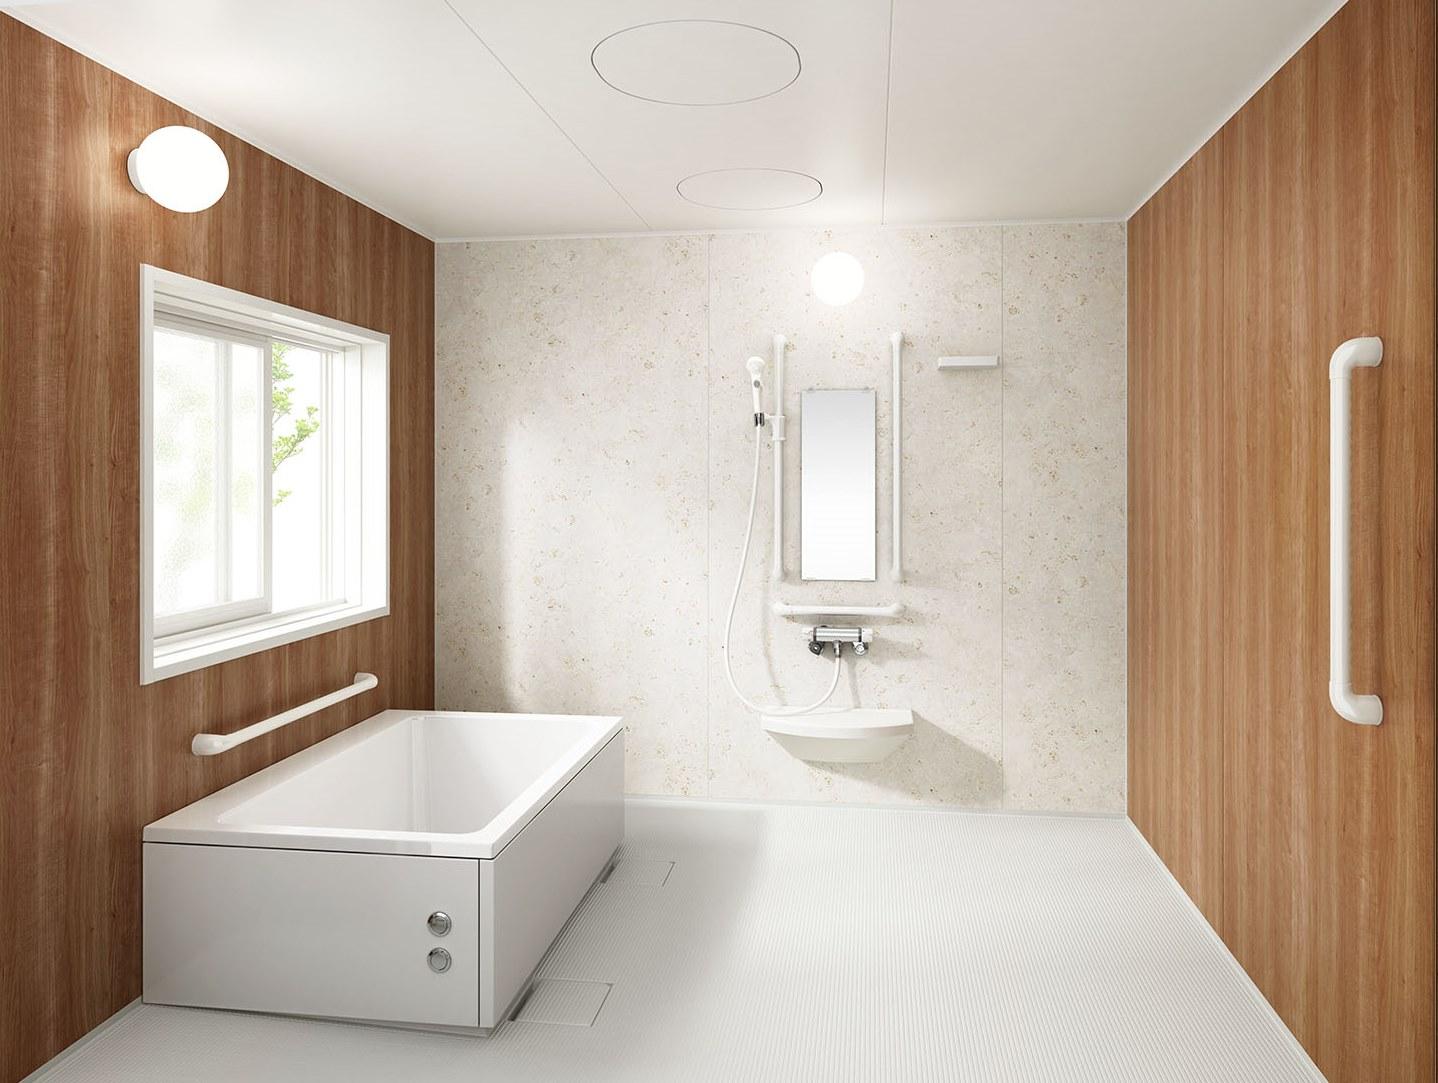 アクアハートa-U 浴室「2024サイズ」浴槽「W1200サイズ」